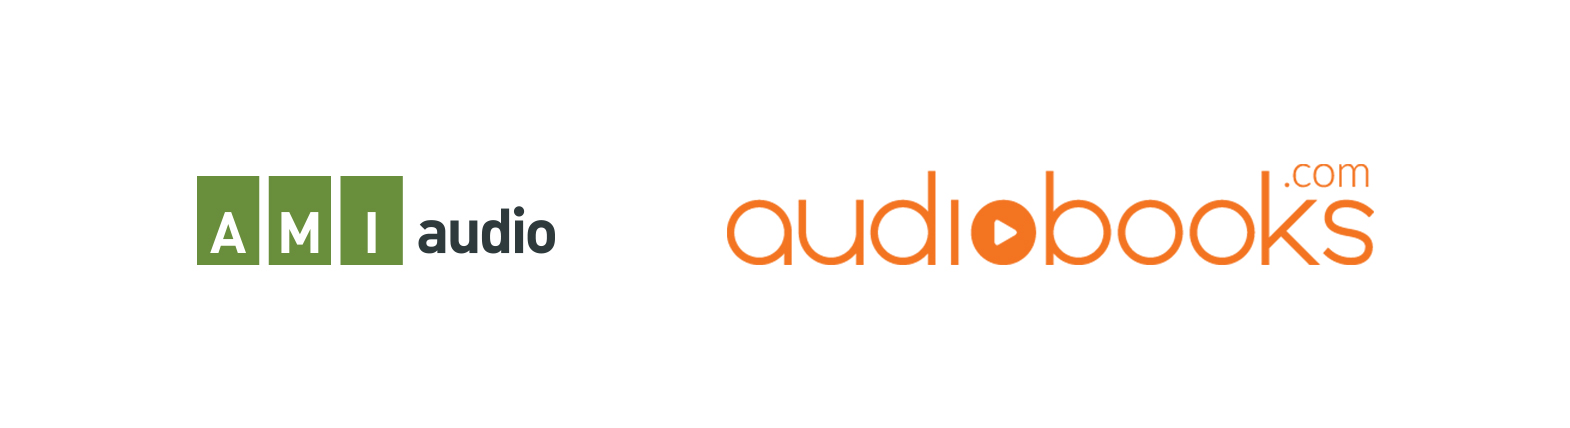 AMI-audio and Audiobooks.com logo